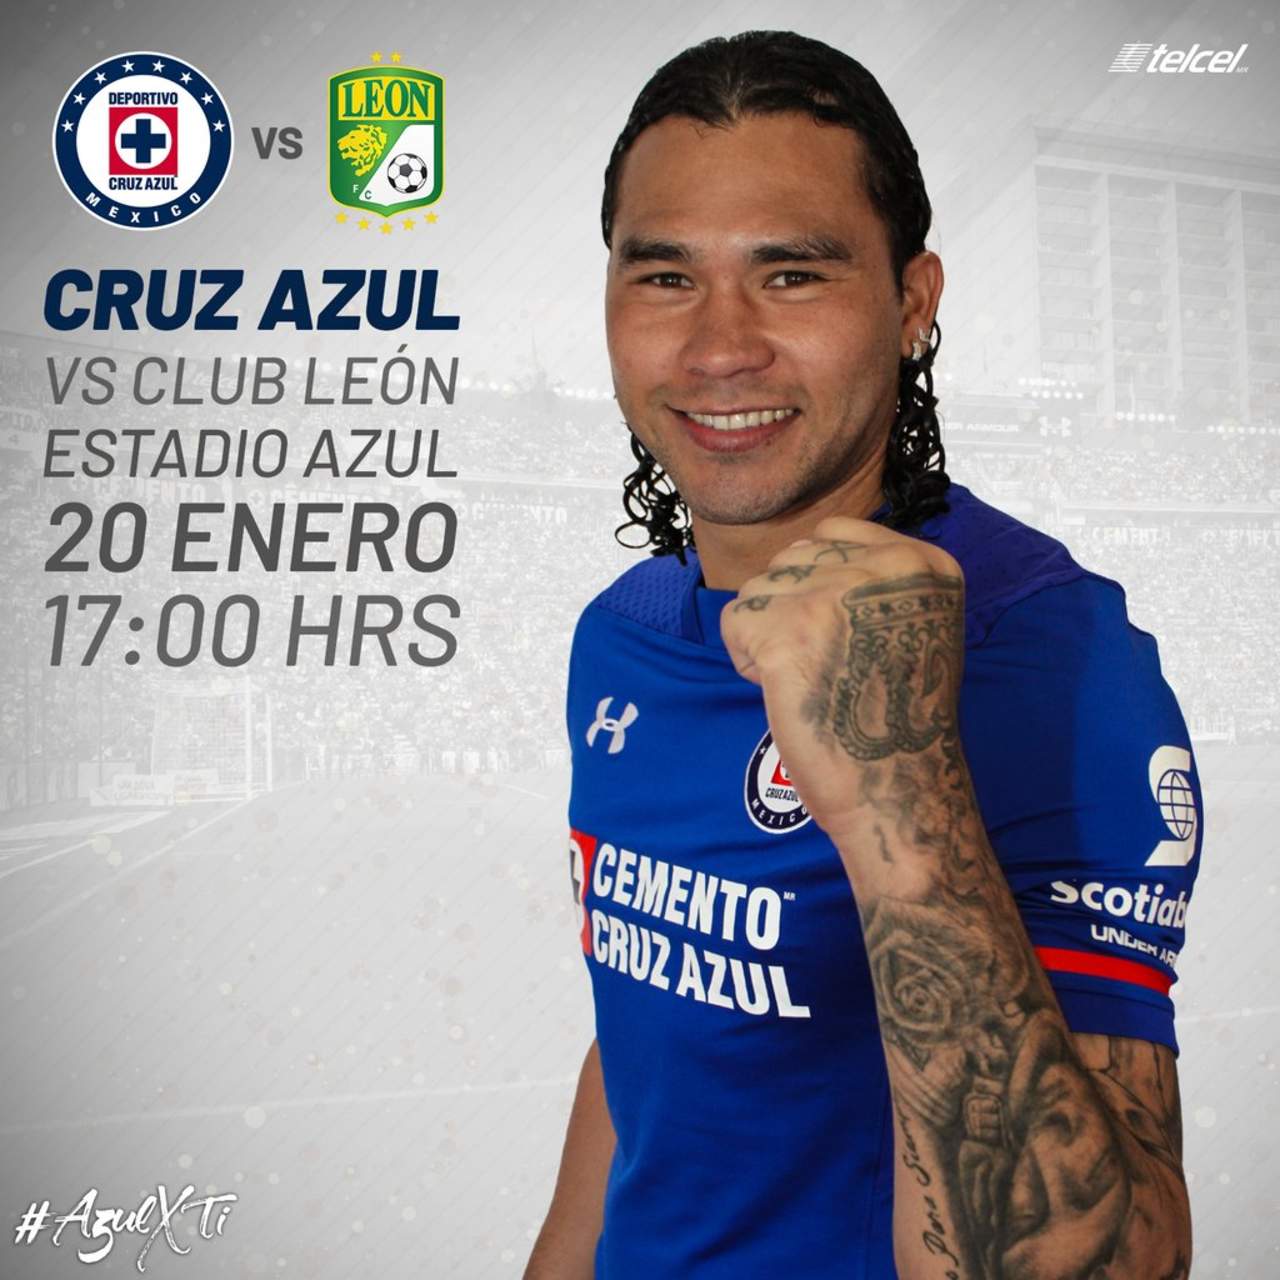 Cruz Azul colgó una imagen a forma de invitación con el 'Gullit' Peña en ella, situación que aprovechó la gente de León para recordar que fue su jugador. (TWITTER)